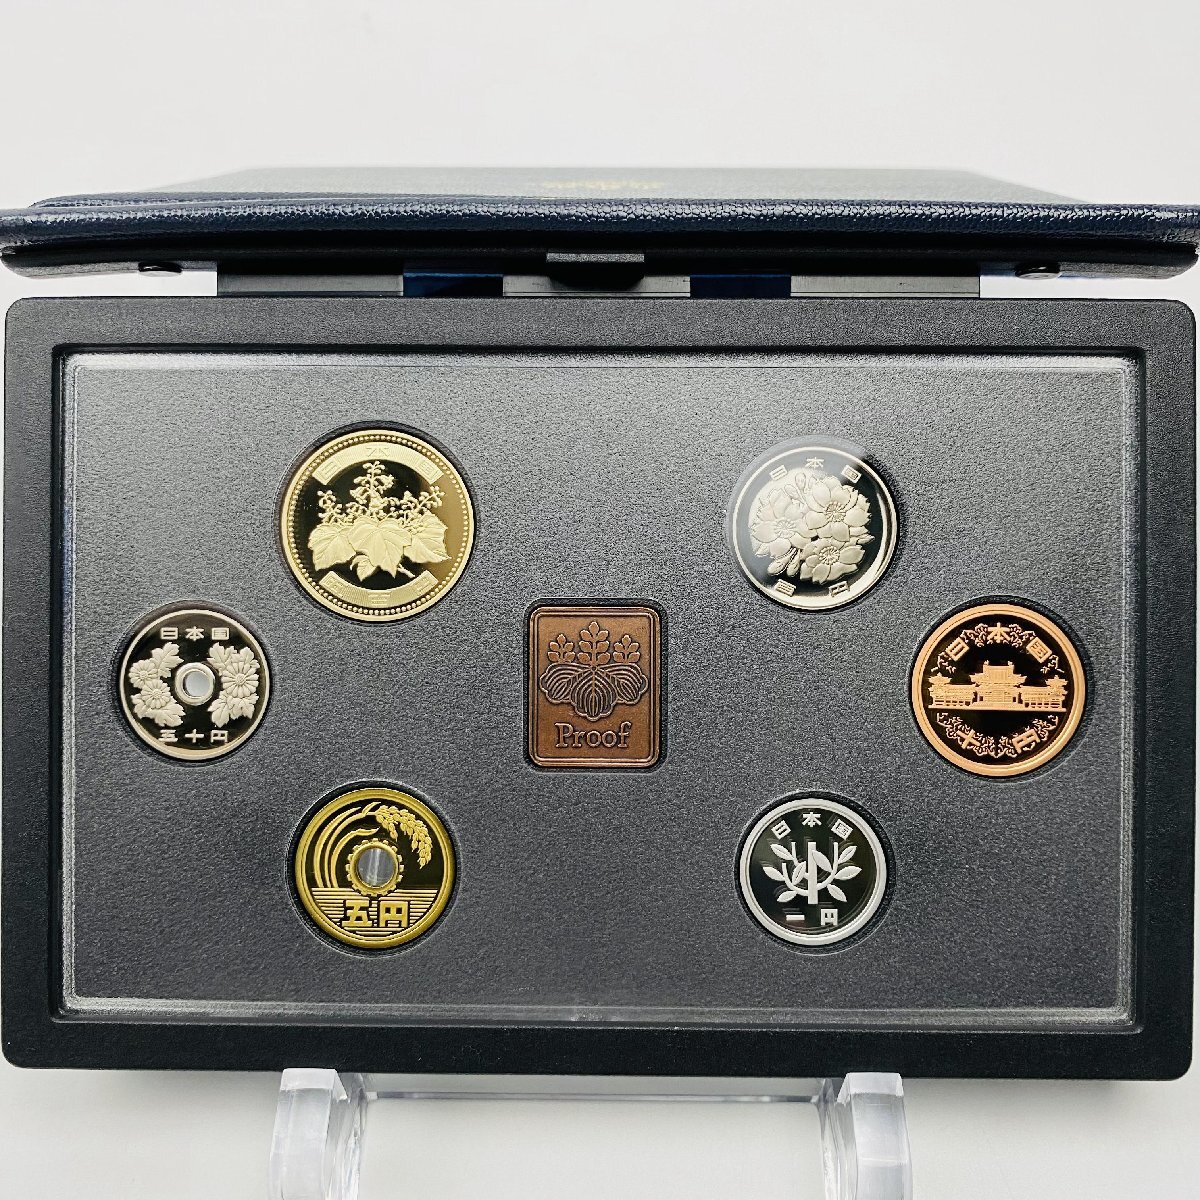 2007年 平成19年 通常プルーフ貨幣セット 額面666円 年銘板有 全揃い 記念硬貨 記念貨幣 貨幣組合 日本円 限定貨幣 コレクション P2007_画像2